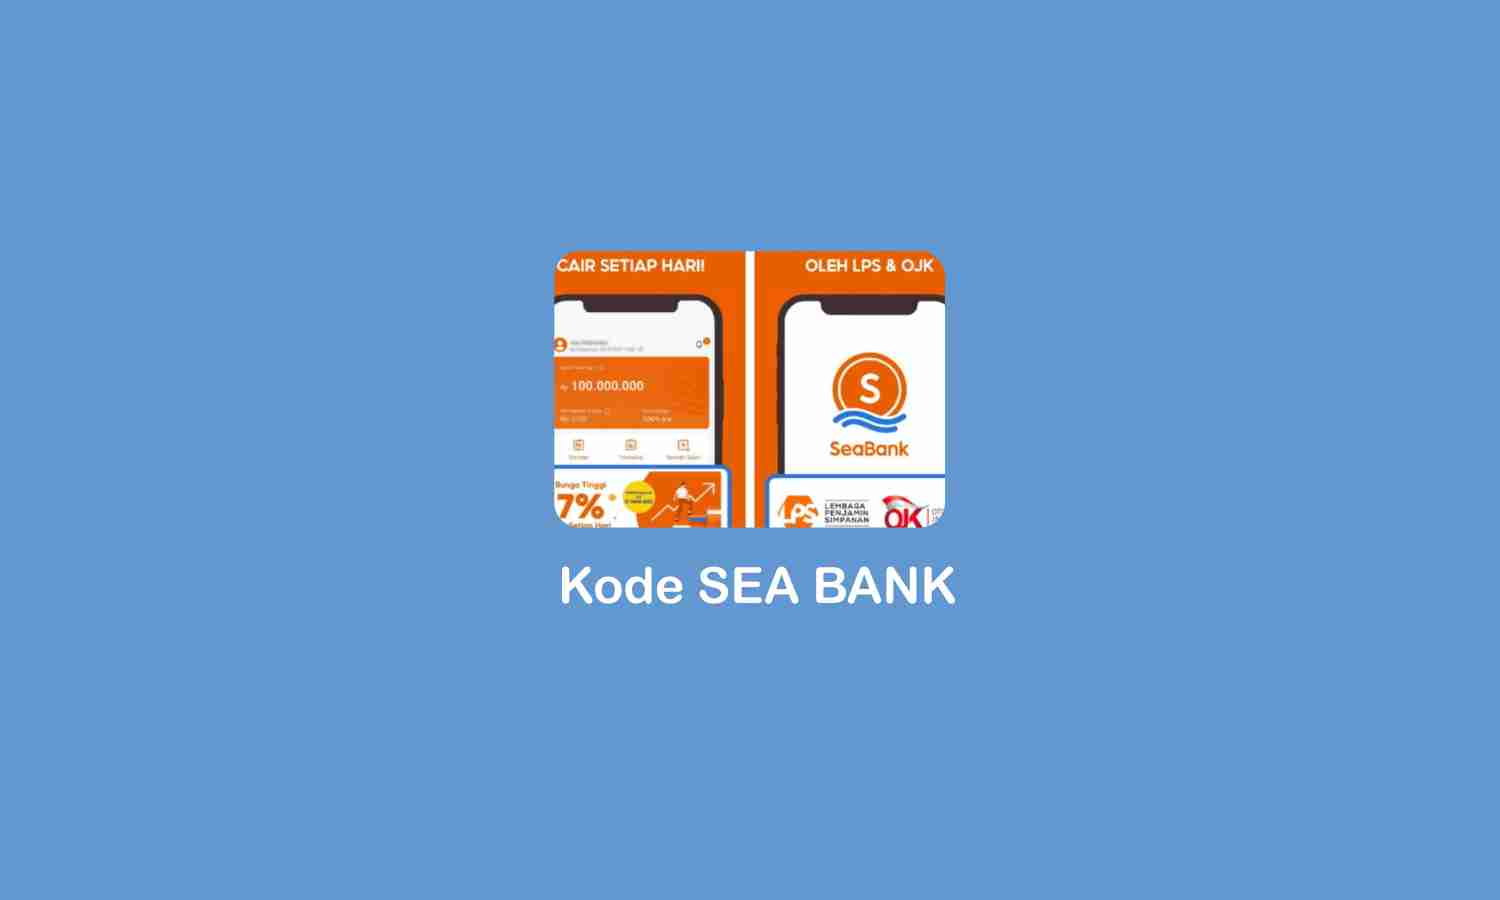 Kode Sea Bank